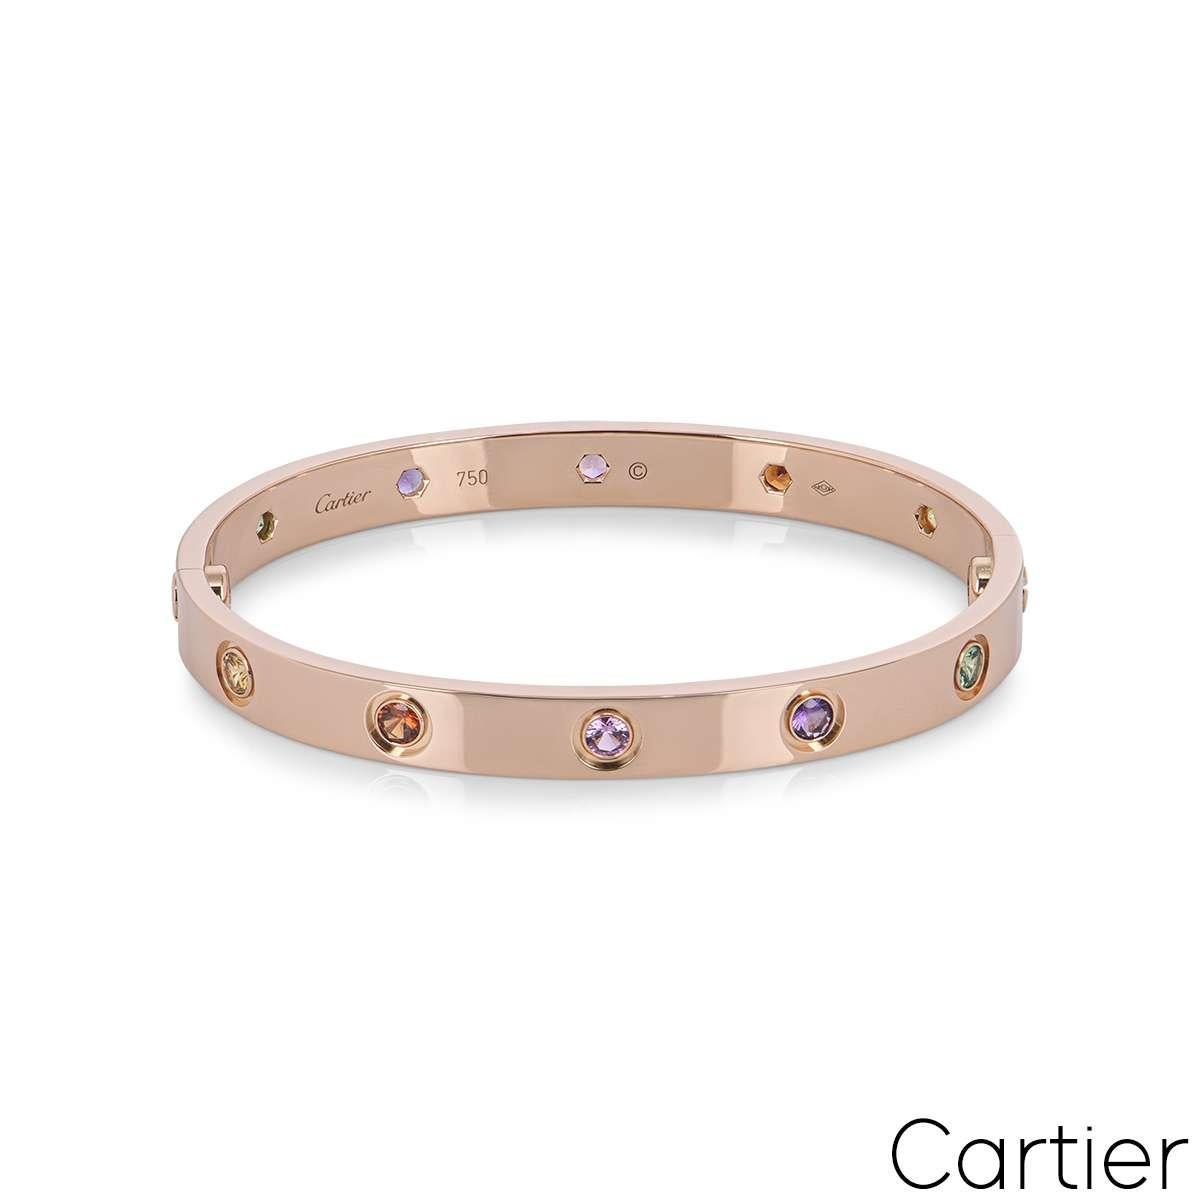 Un bracelet en or rose 18 carats de Cartier, de la collection Love. Serti de 10 pierres de couleur, dont des saphirs roses et jaunes, des grenats verts et orange et des améthystes. Ce bracelet, doté du nouveau système de vis, est de taille 17 et